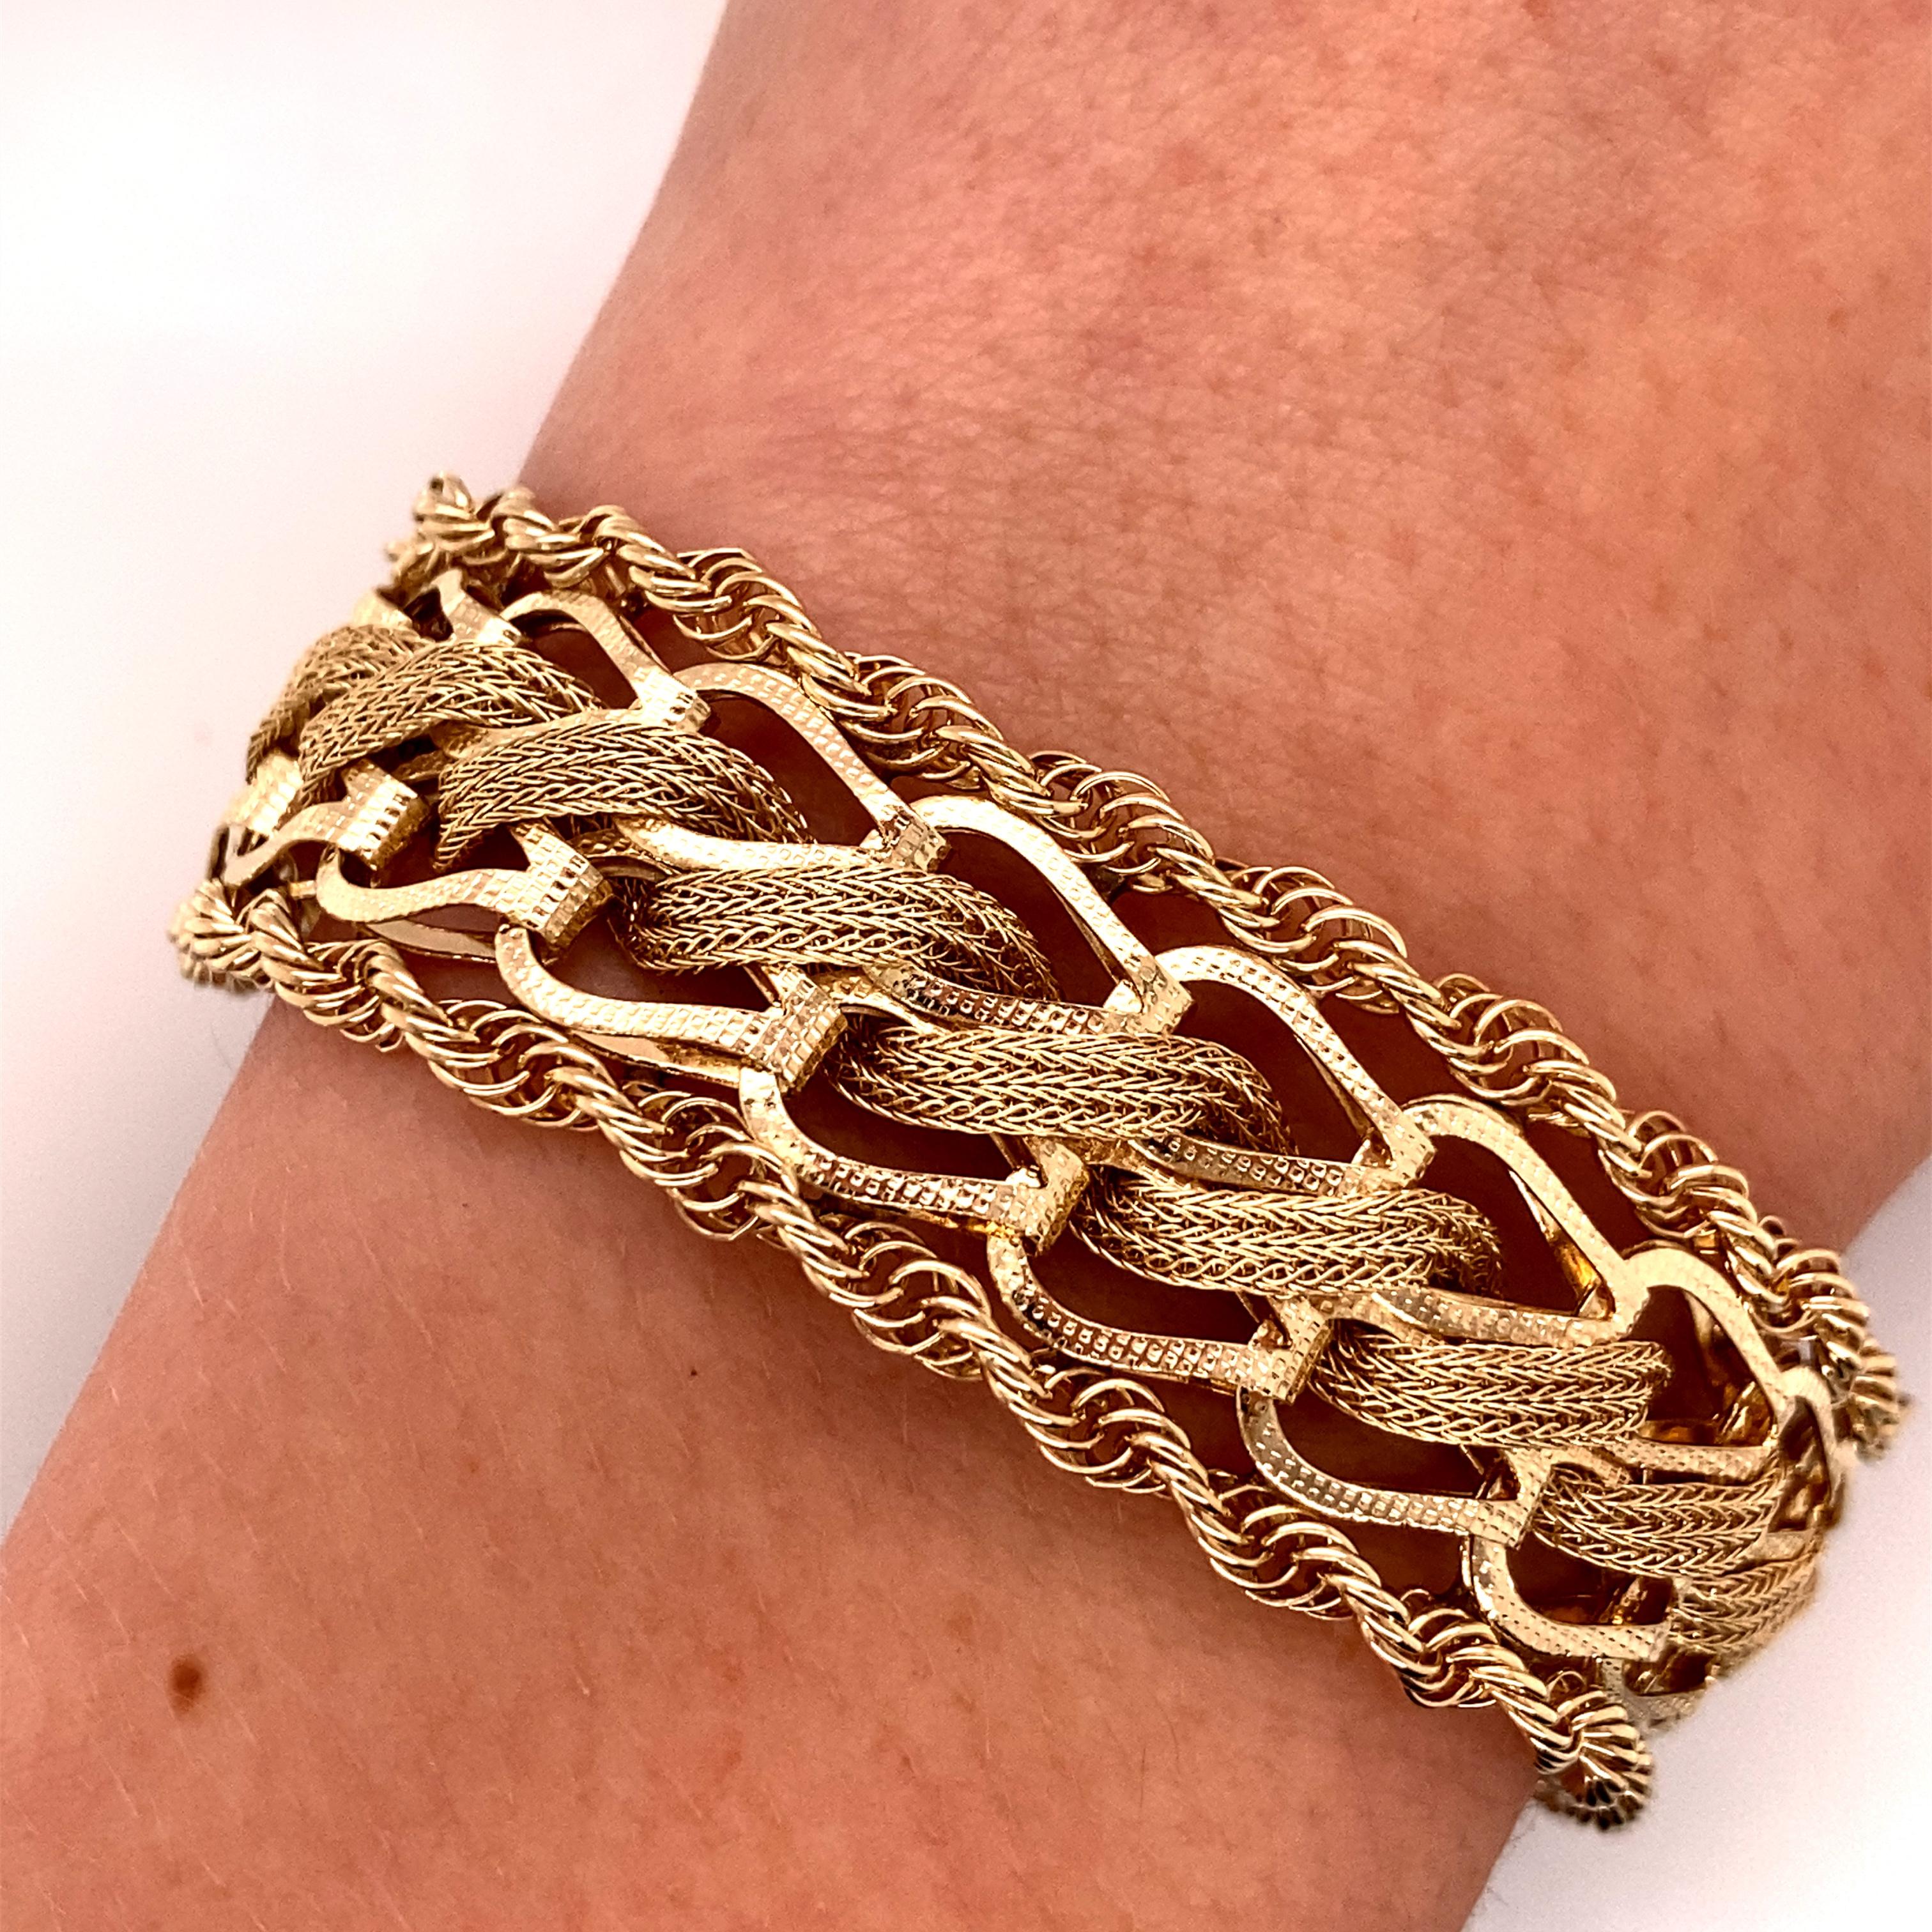 Vintage 1960s 14KY Gold Woven Wheat Link mit Rope Edge Wide Charm Bracelet - Das Armband messen 7 Zoll lang und 3/4 Zoll breit und verfügt über einen versteckten Verschluss mit einer Figur 8 Sicherheit. Das Gewicht des Armbands beträgt 26,4 Gramm.